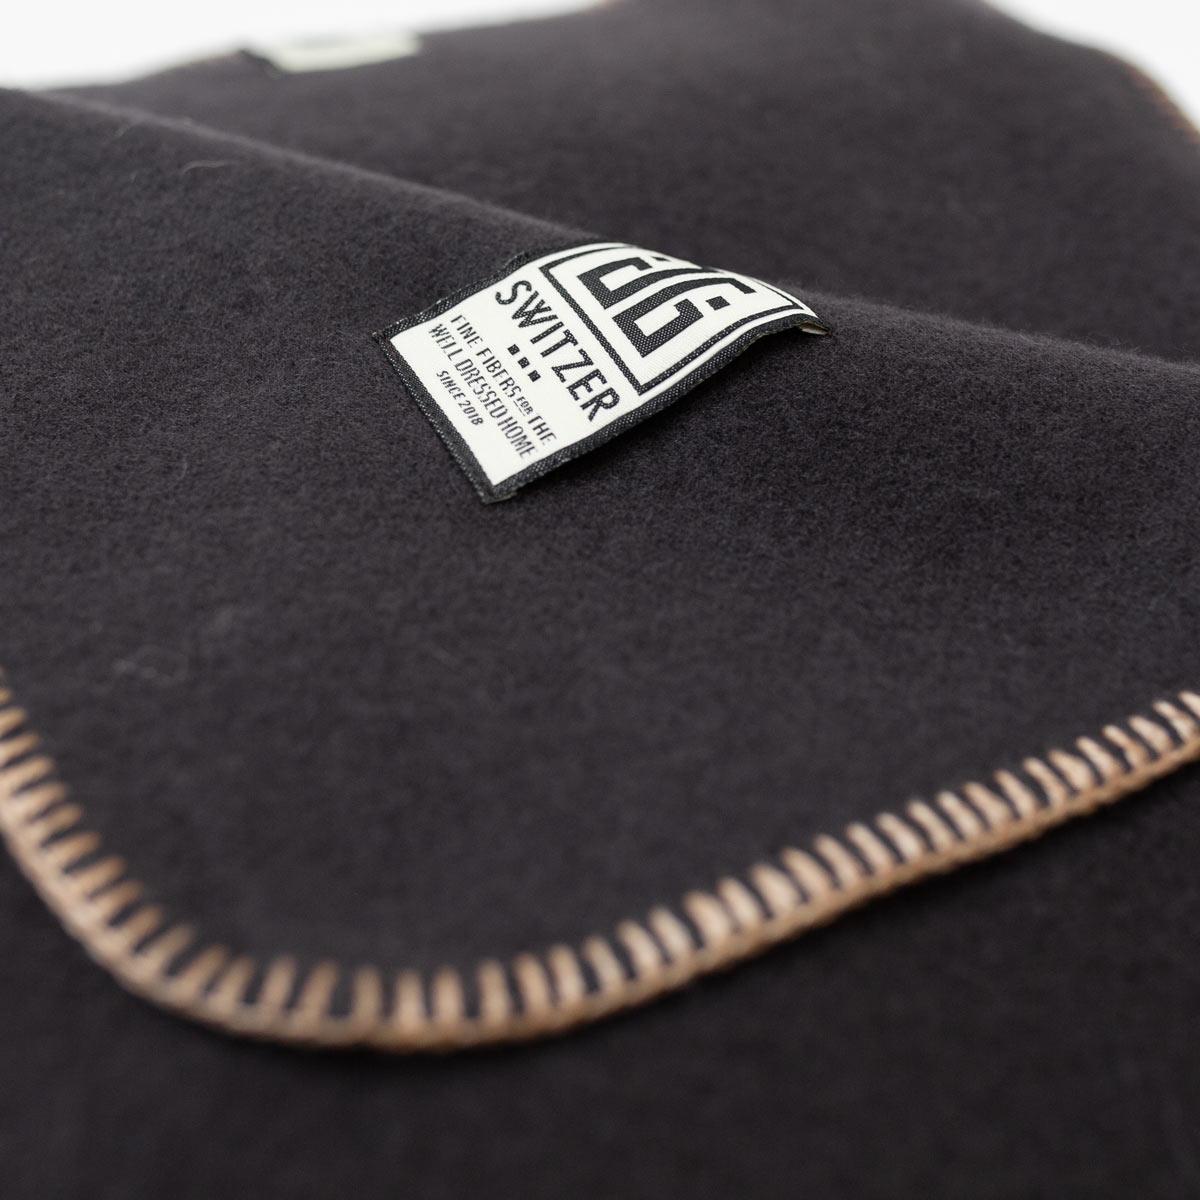 Die Decke Classic in Bark (aubergine/braun) ist eine maßgeschneiderte Decke, die exklusiv von JG SWITZER aus 100% Merinowolle hergestellt wird. Der Blankettstich wird in unserer Werkstatt in einem schönen Ecru-Ton hergestellt. Das Deckenstichgarn